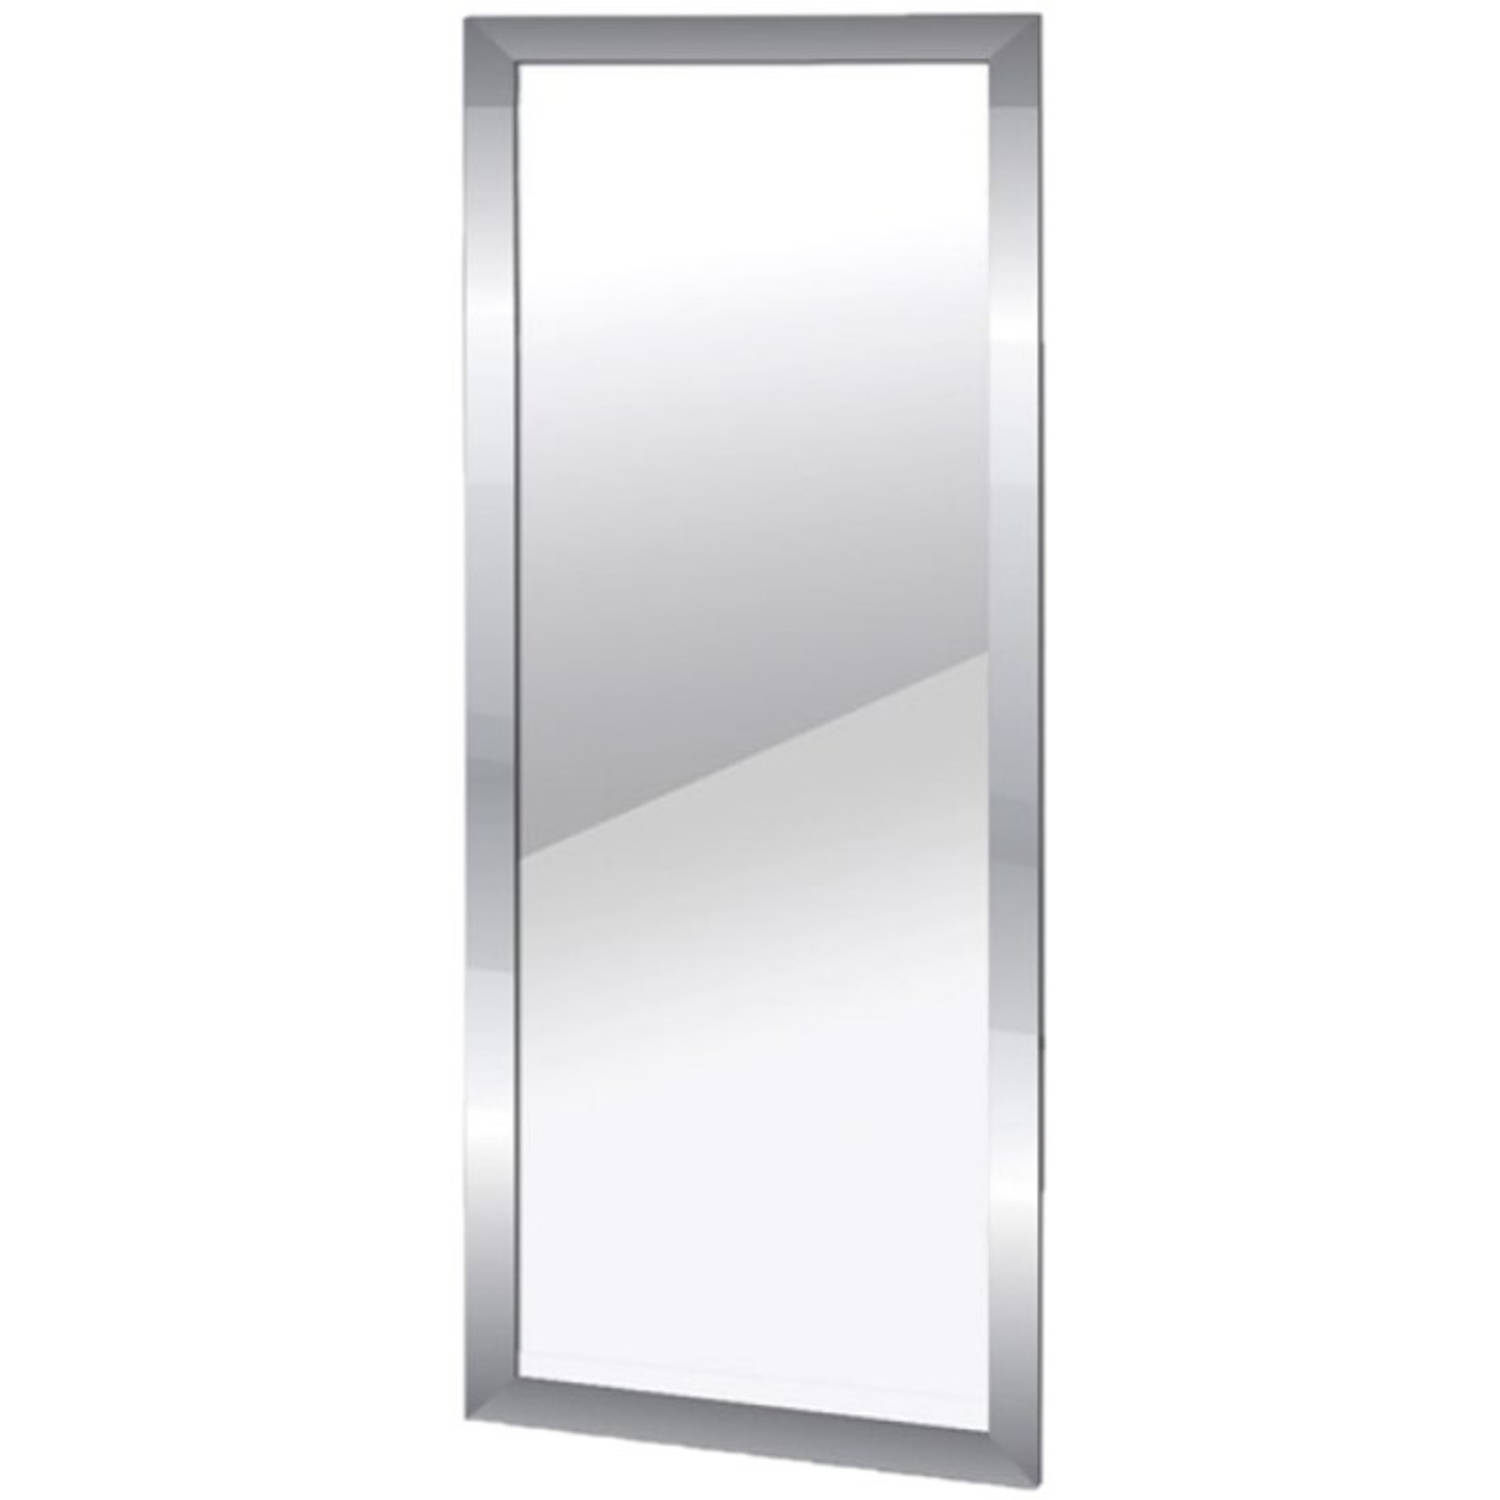 Rijden industrie Meyella Wandspiegel rechthoekig met metalen frame zilver 30 x 60 cm - Spiegels |  Blokker